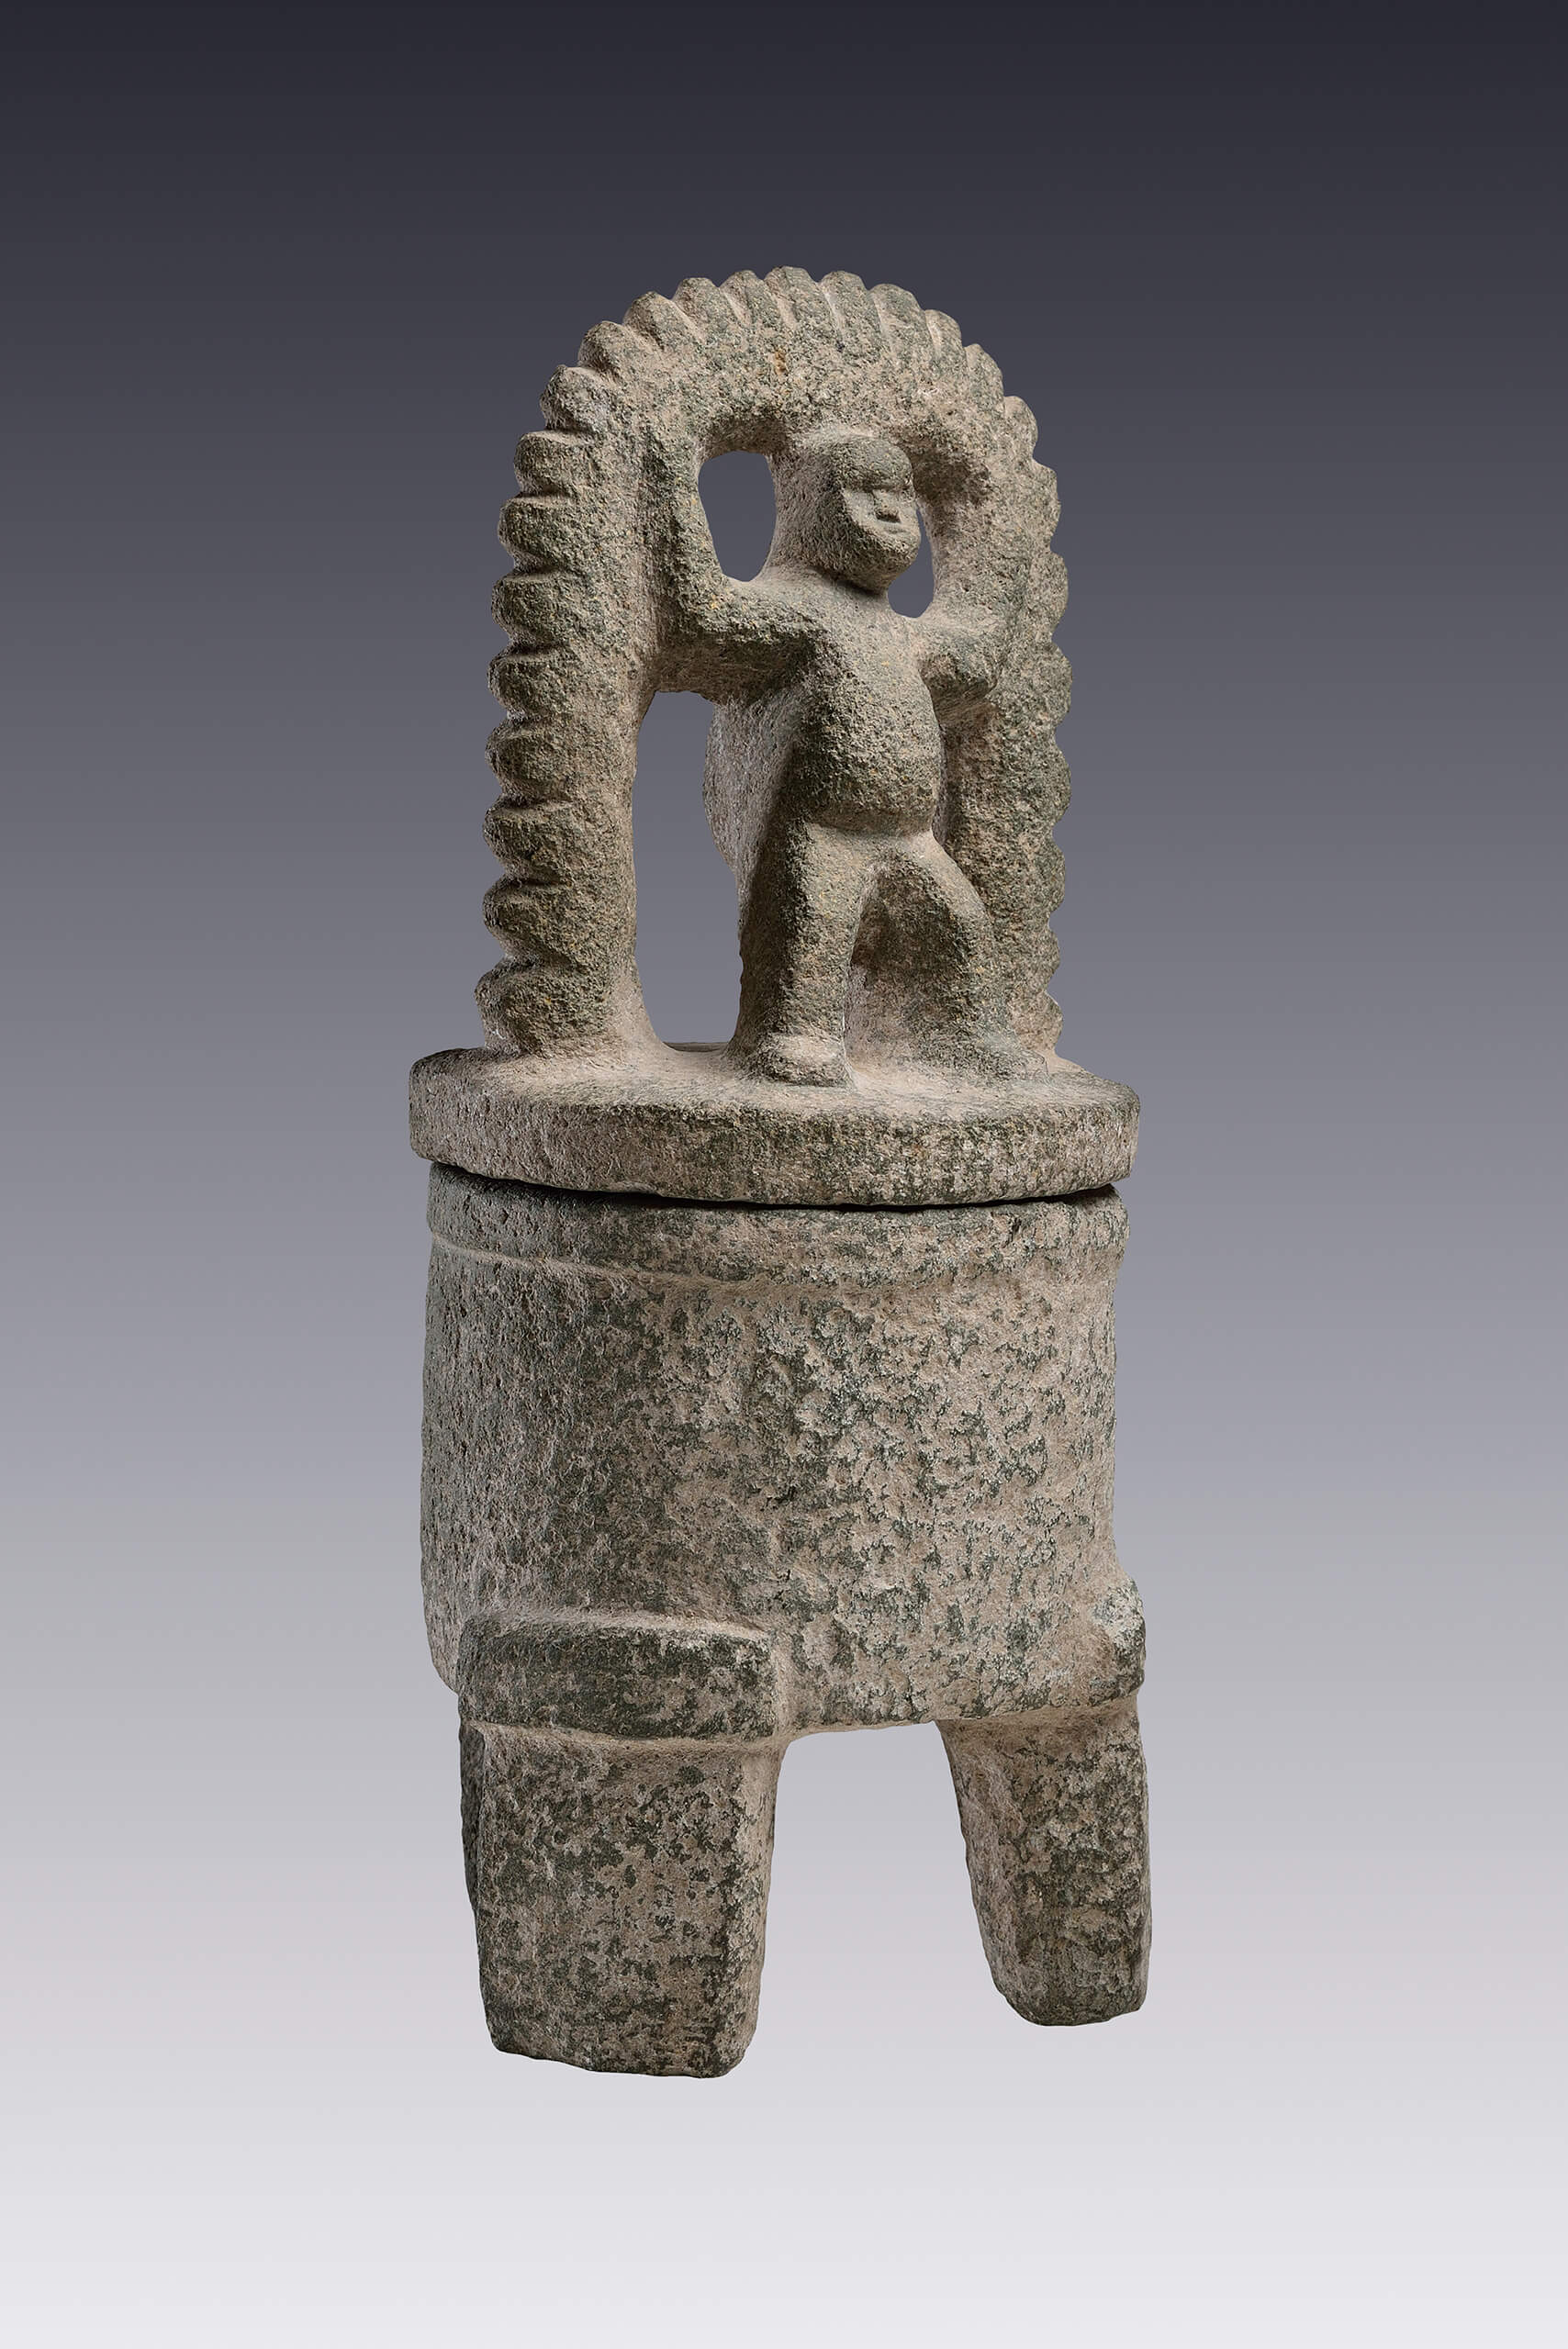  Vaso trípode con tapadera de mono | El México antiguo. Salas de Arte Prehispánico | Museo Amparo, Puebla